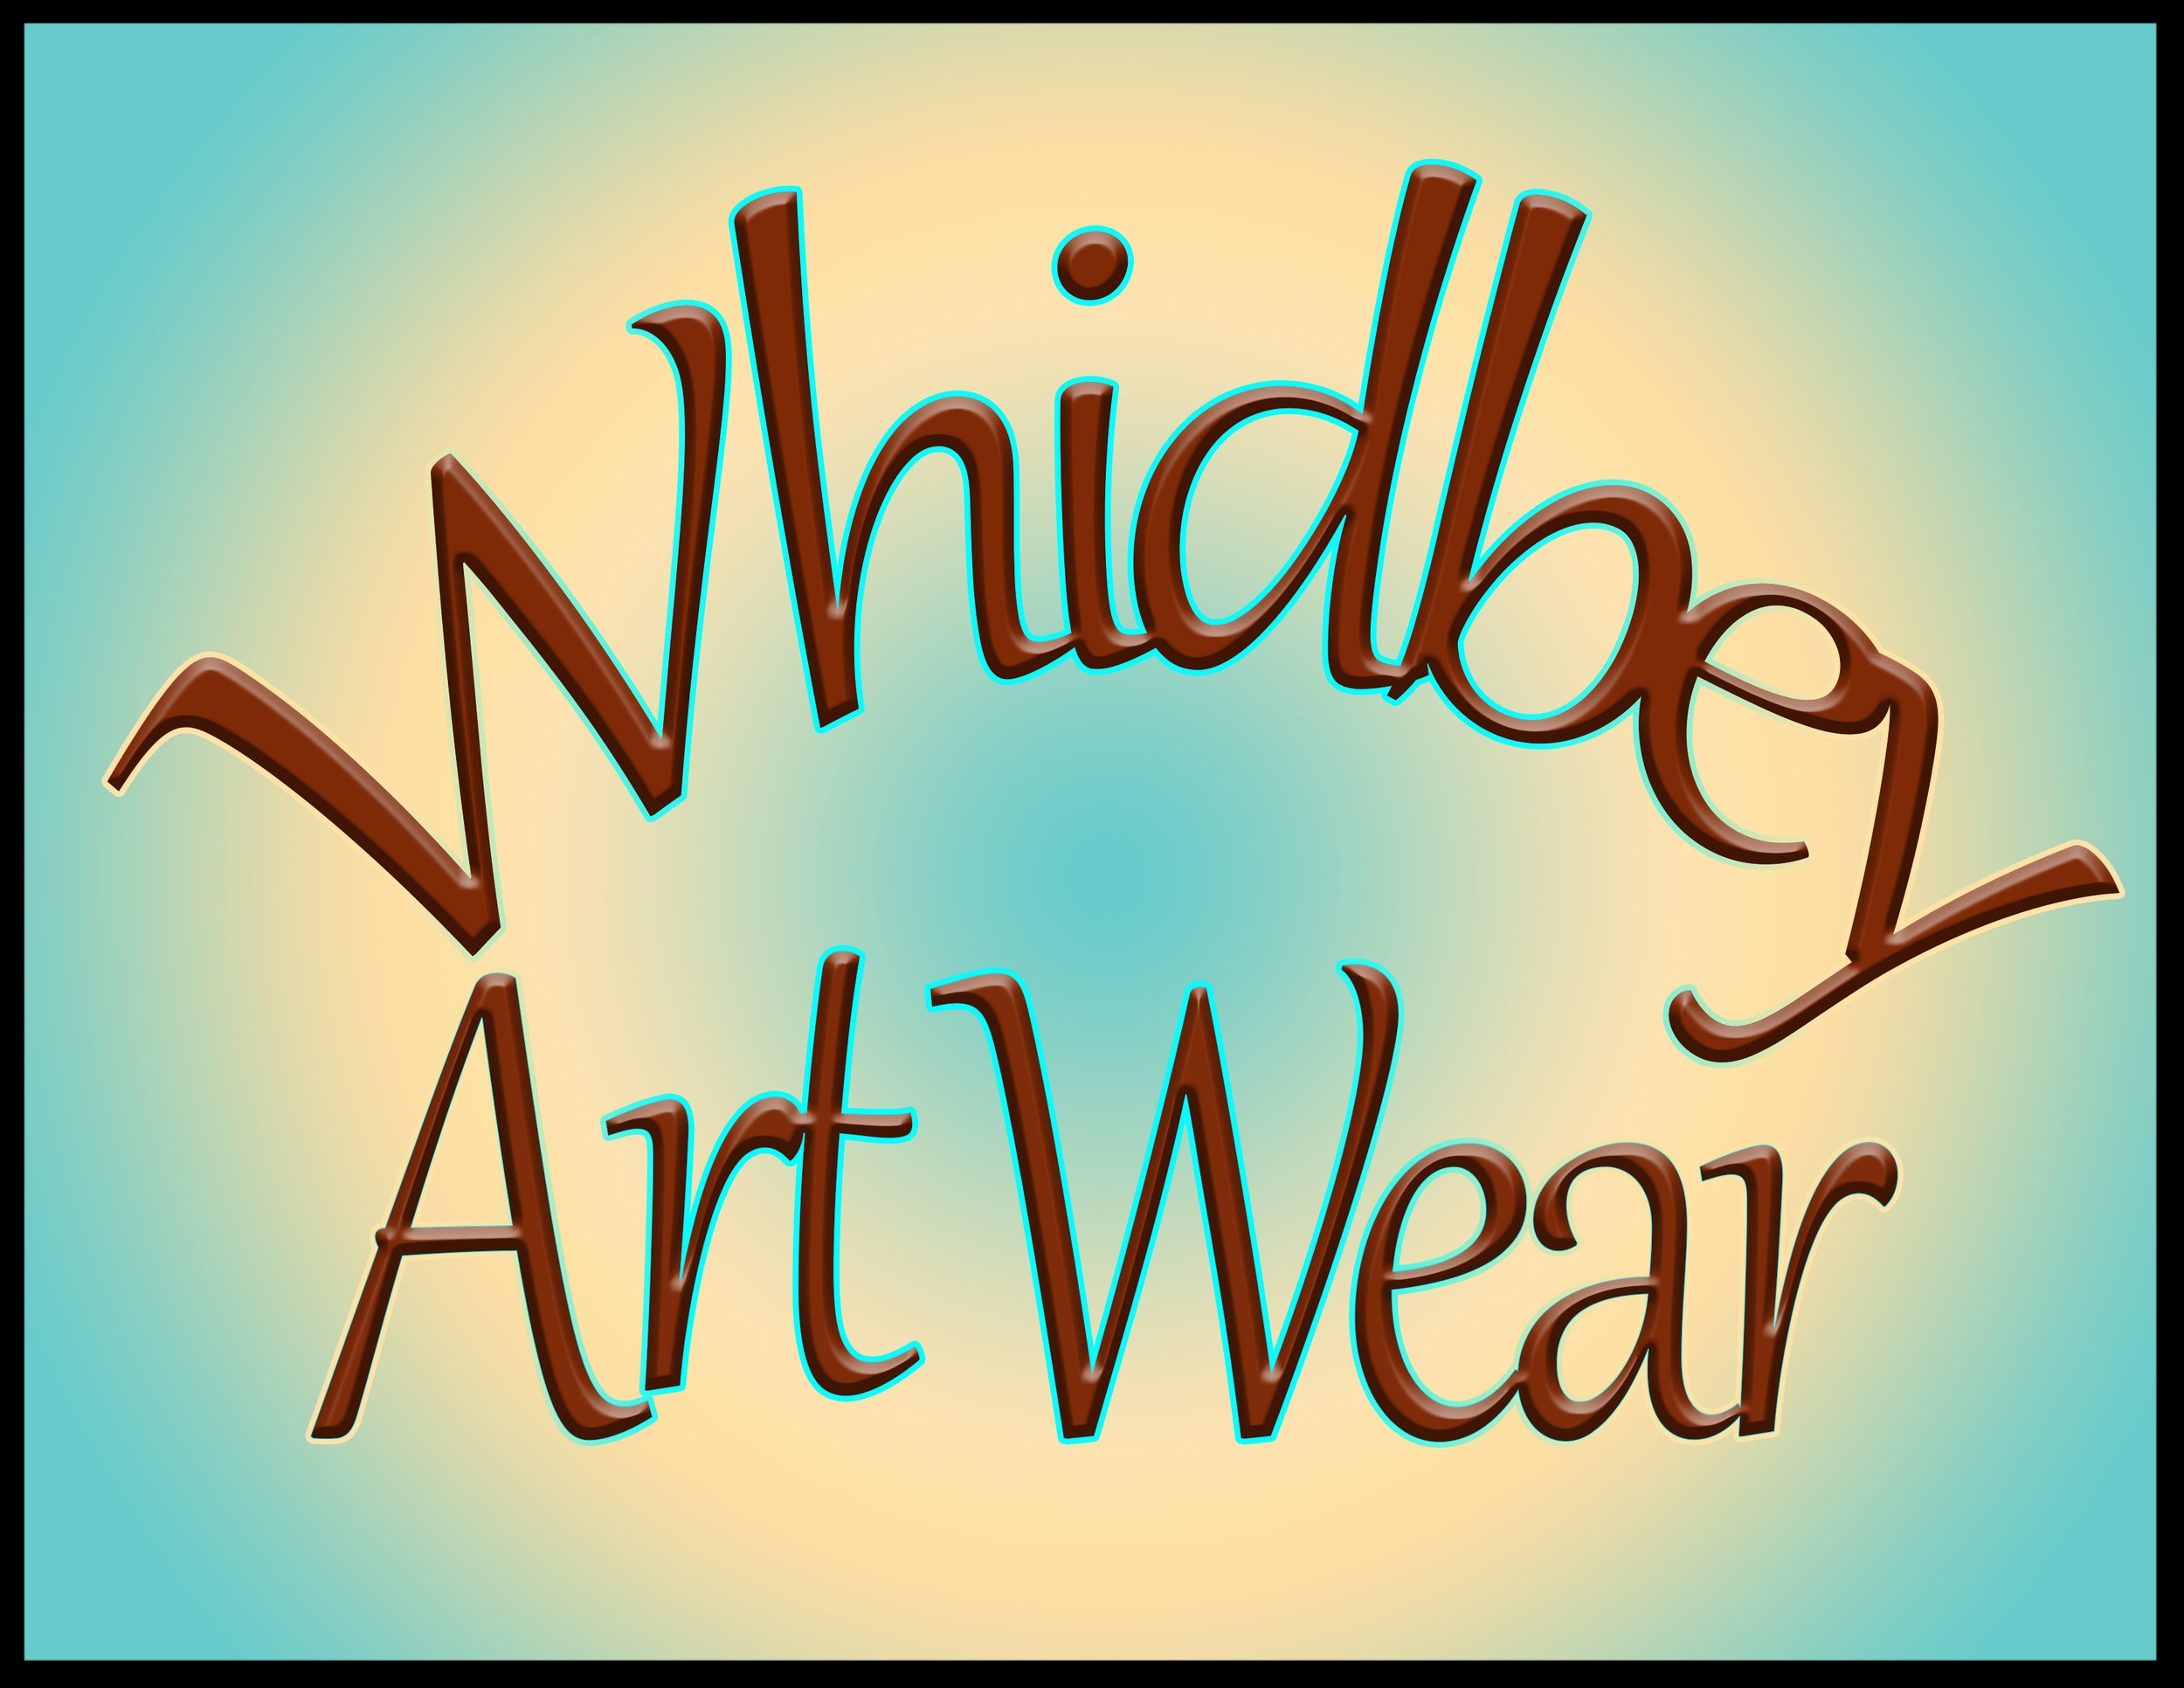 Whidbey Art Wear